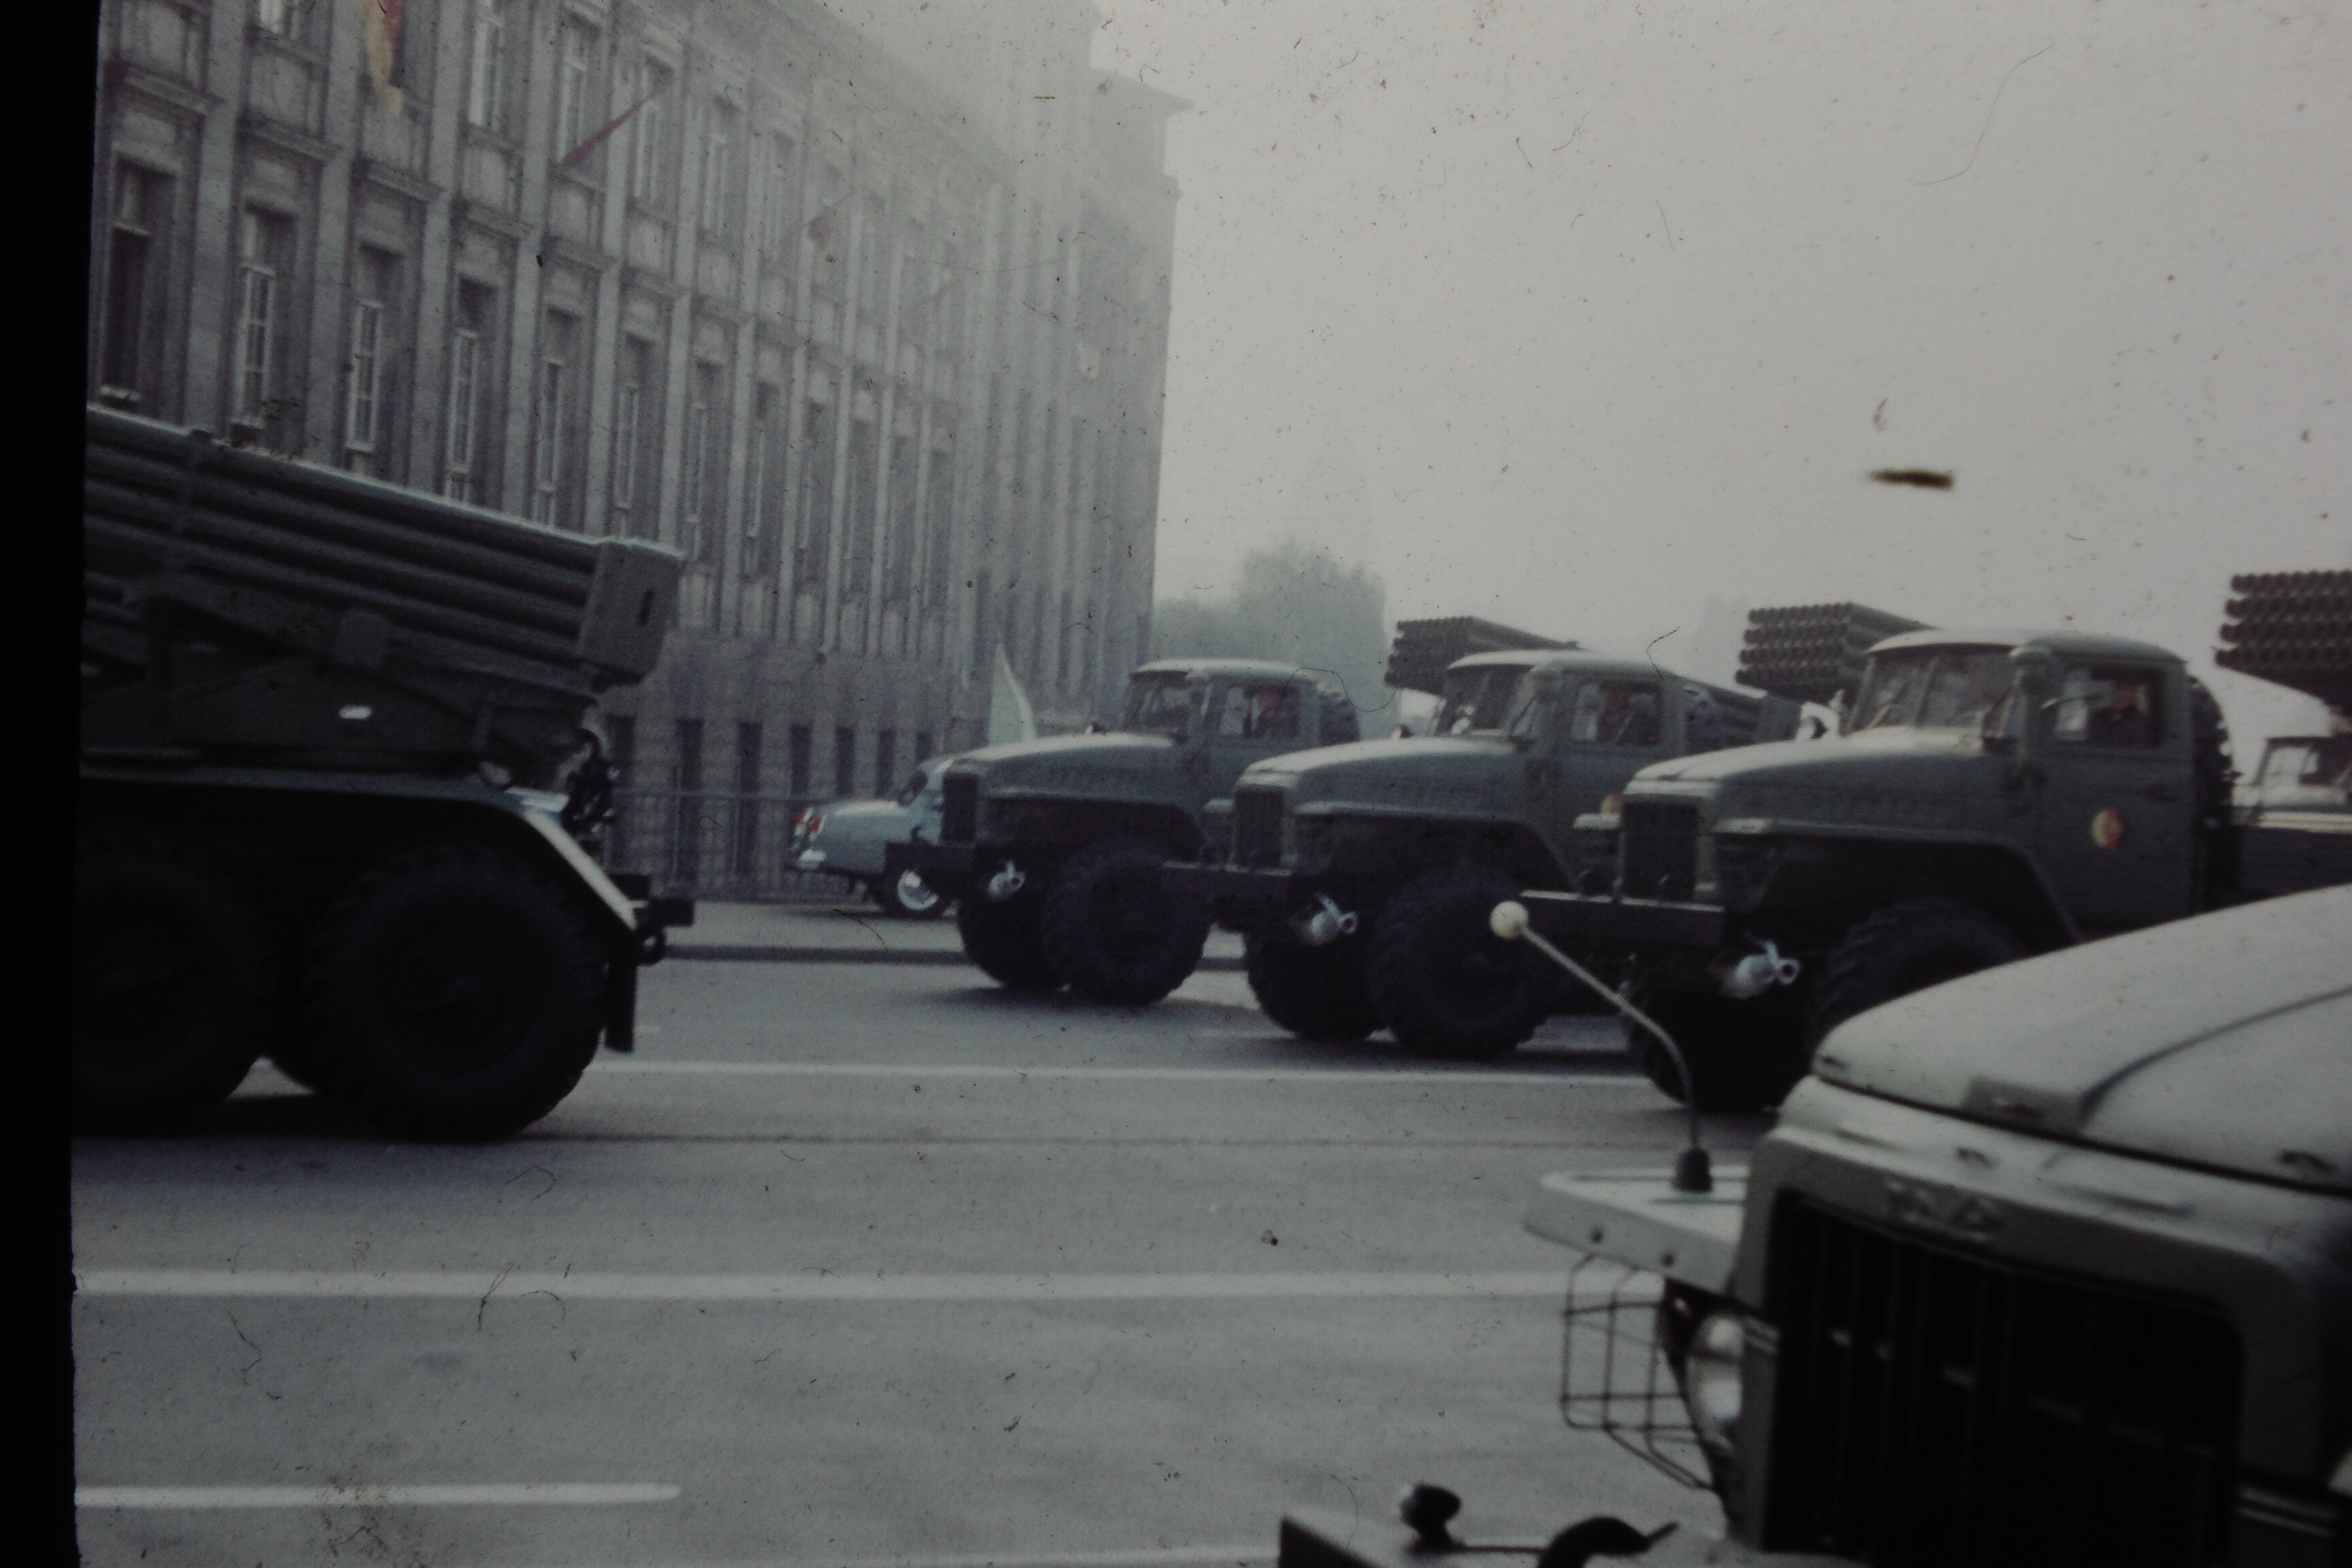 Militärparade in Berlin: Lastwagen mit Raketenwerfern (DDR Geschichtsmuseum im Dokumentationszentrum Perleberg CC BY-SA)